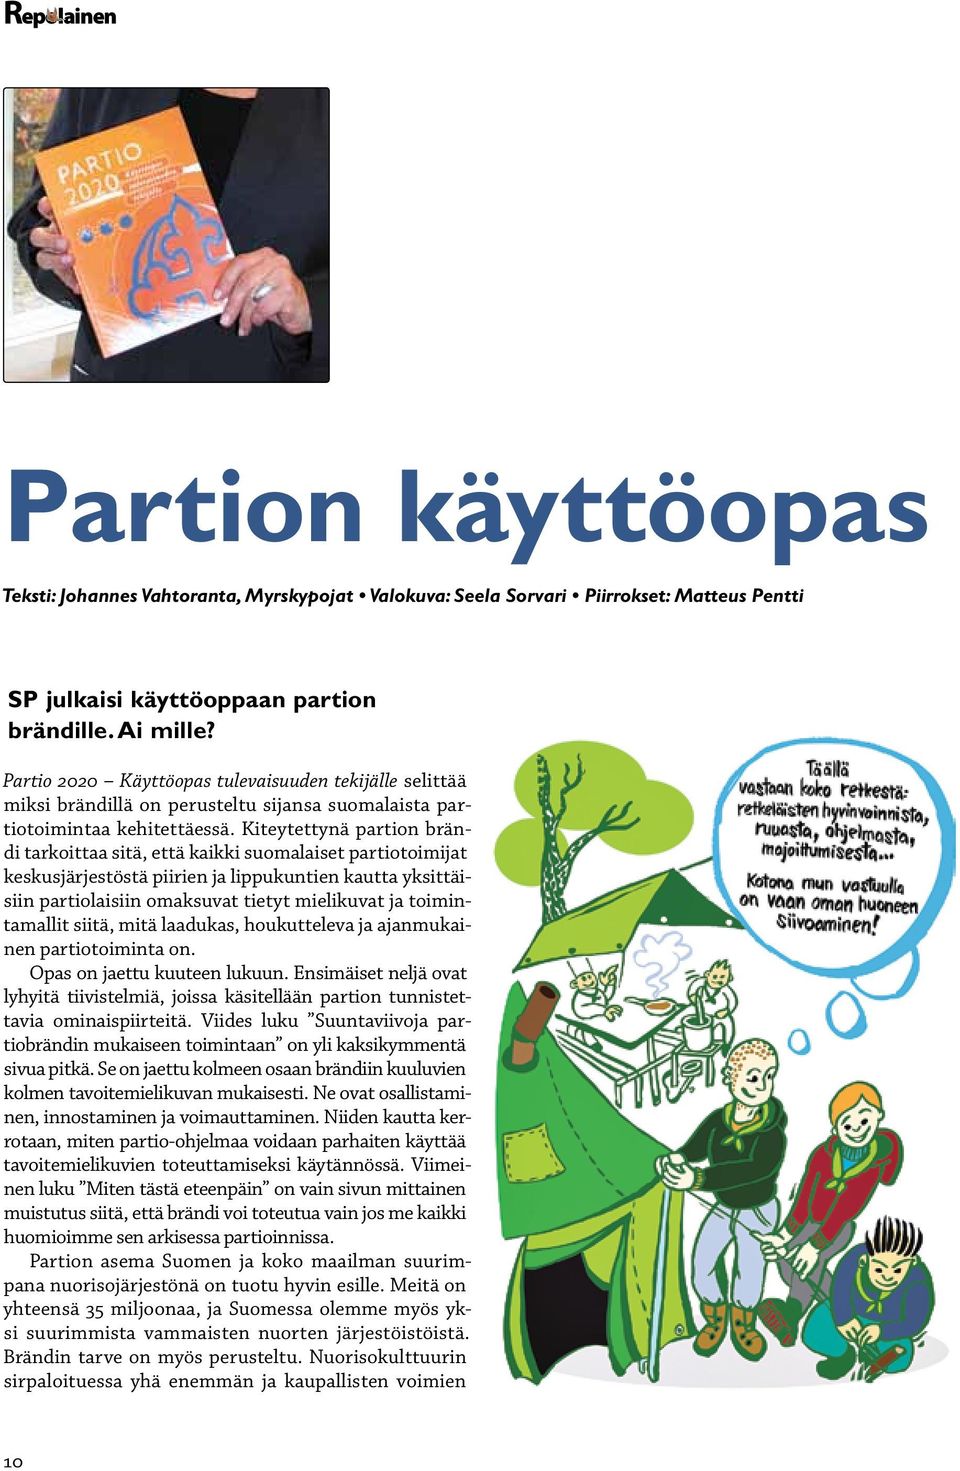 Kiteytettynä partion brändi tarkoittaa sitä, että kaikki suomalaiset partiotoimijat keskusjärjestöstä piirien ja lippukuntien kautta yksittäisiin partiolaisiin omaksuvat tietyt mielikuvat ja